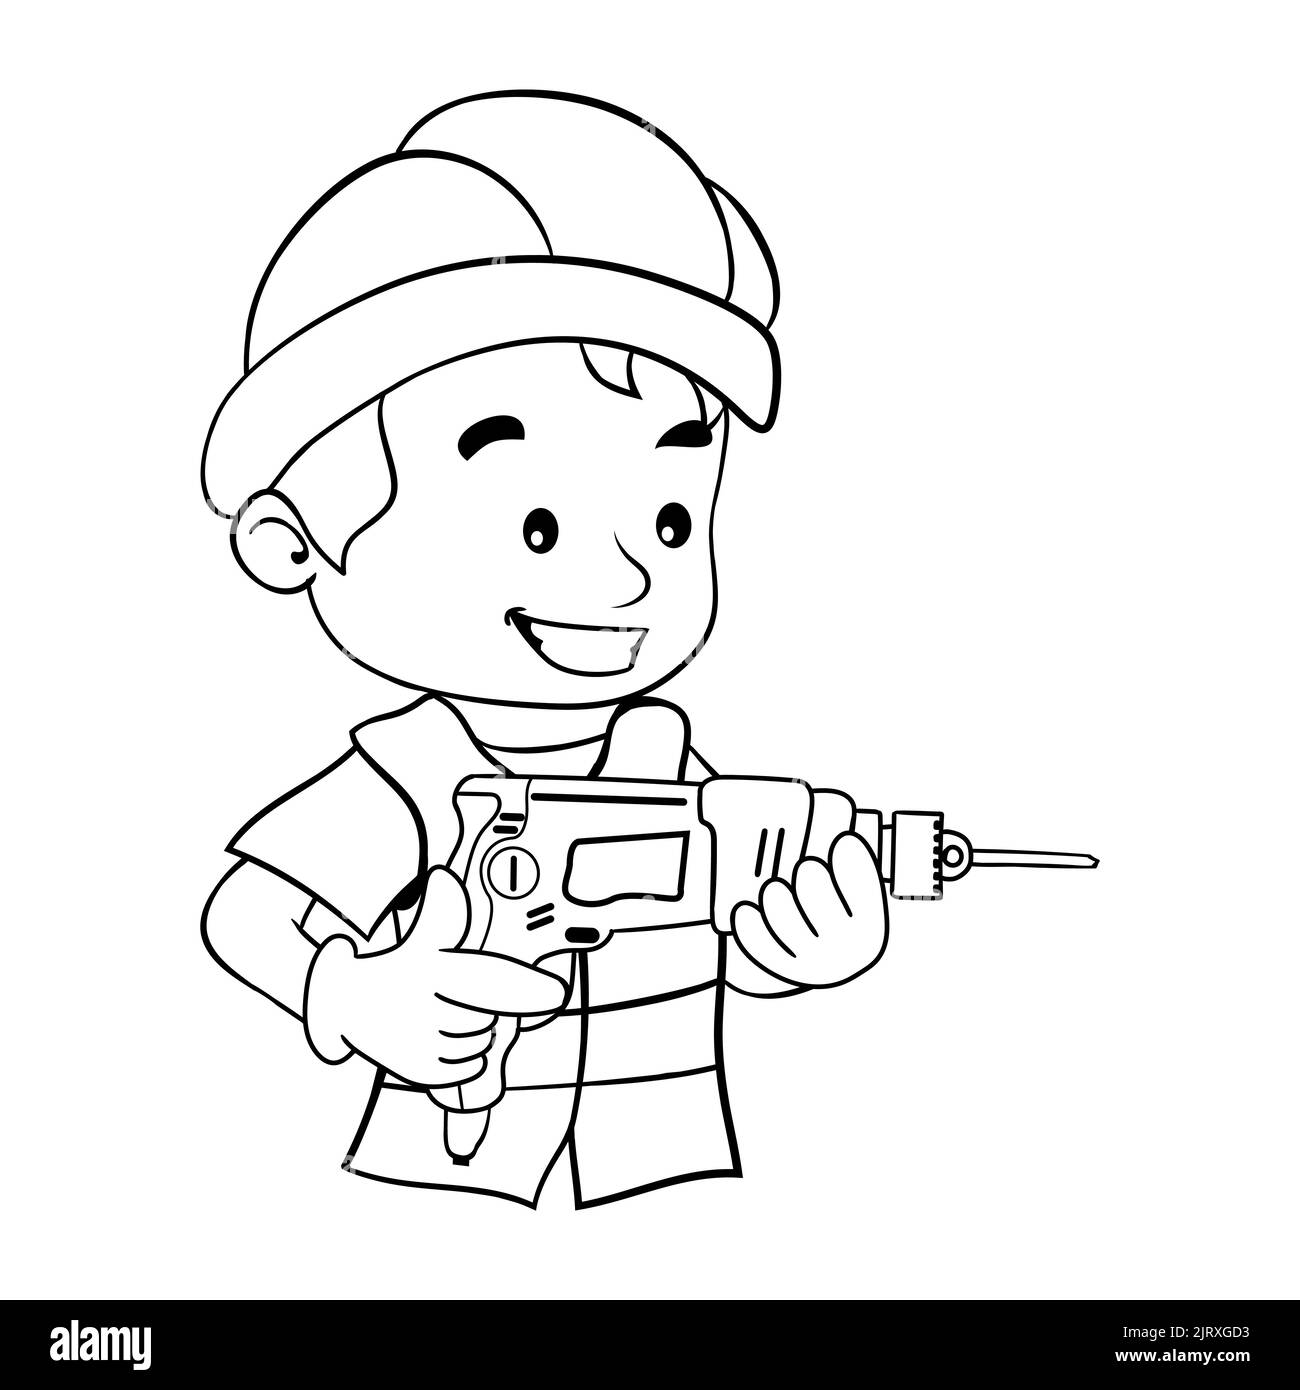 Cartoon-Design des Arbeiters mit seinem Schutzhelm, der eine Bohrmaschine betreibt. Industriebauarbeiter oder Schreinerei. Malseite Stock Vektor